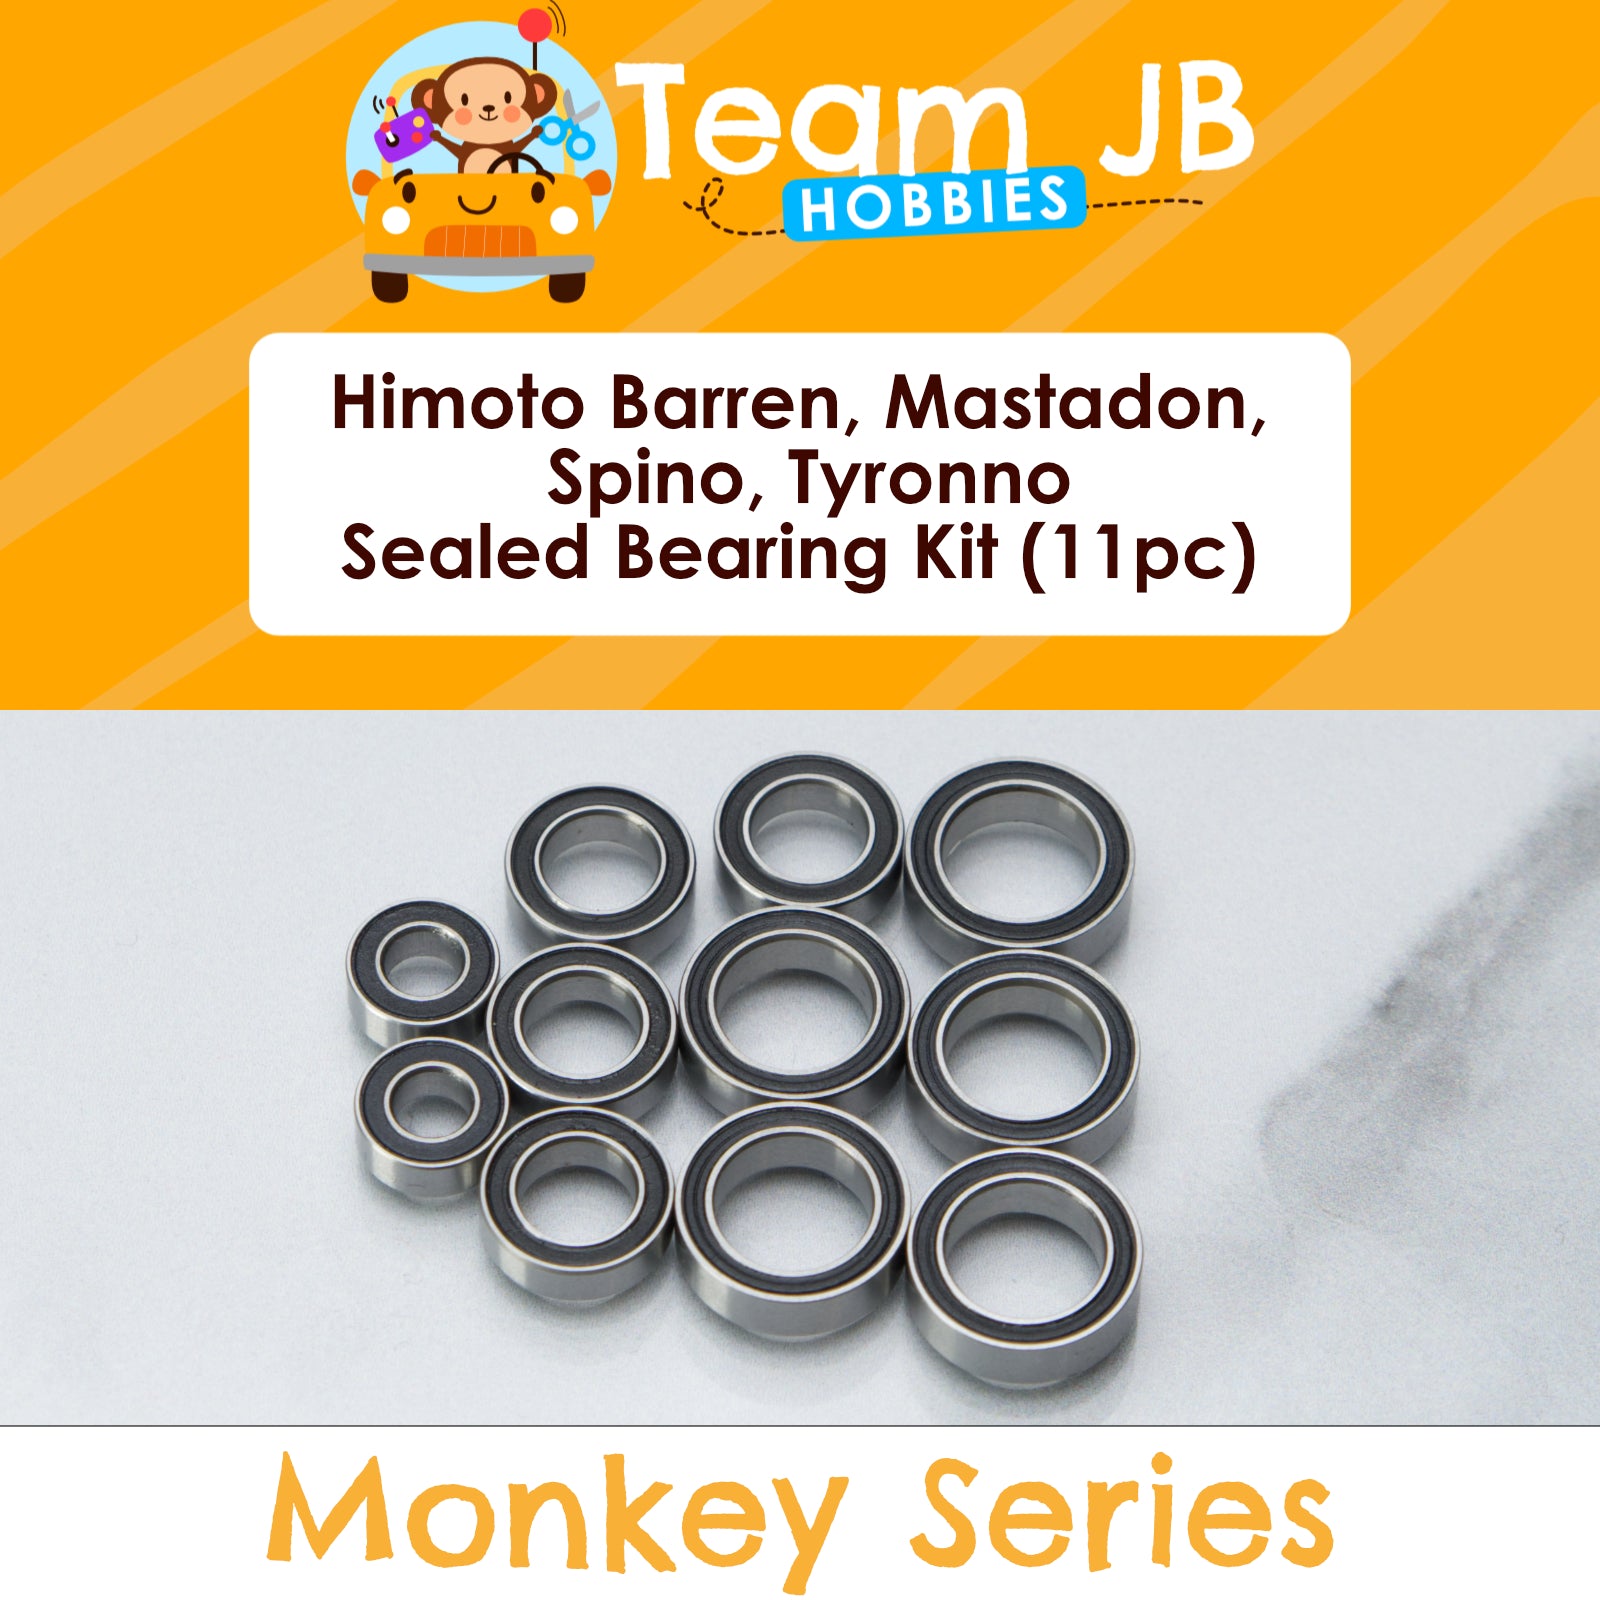 Himoto Barren, Mastadon, Spino, Tyronno - Sealed Bearing Kit